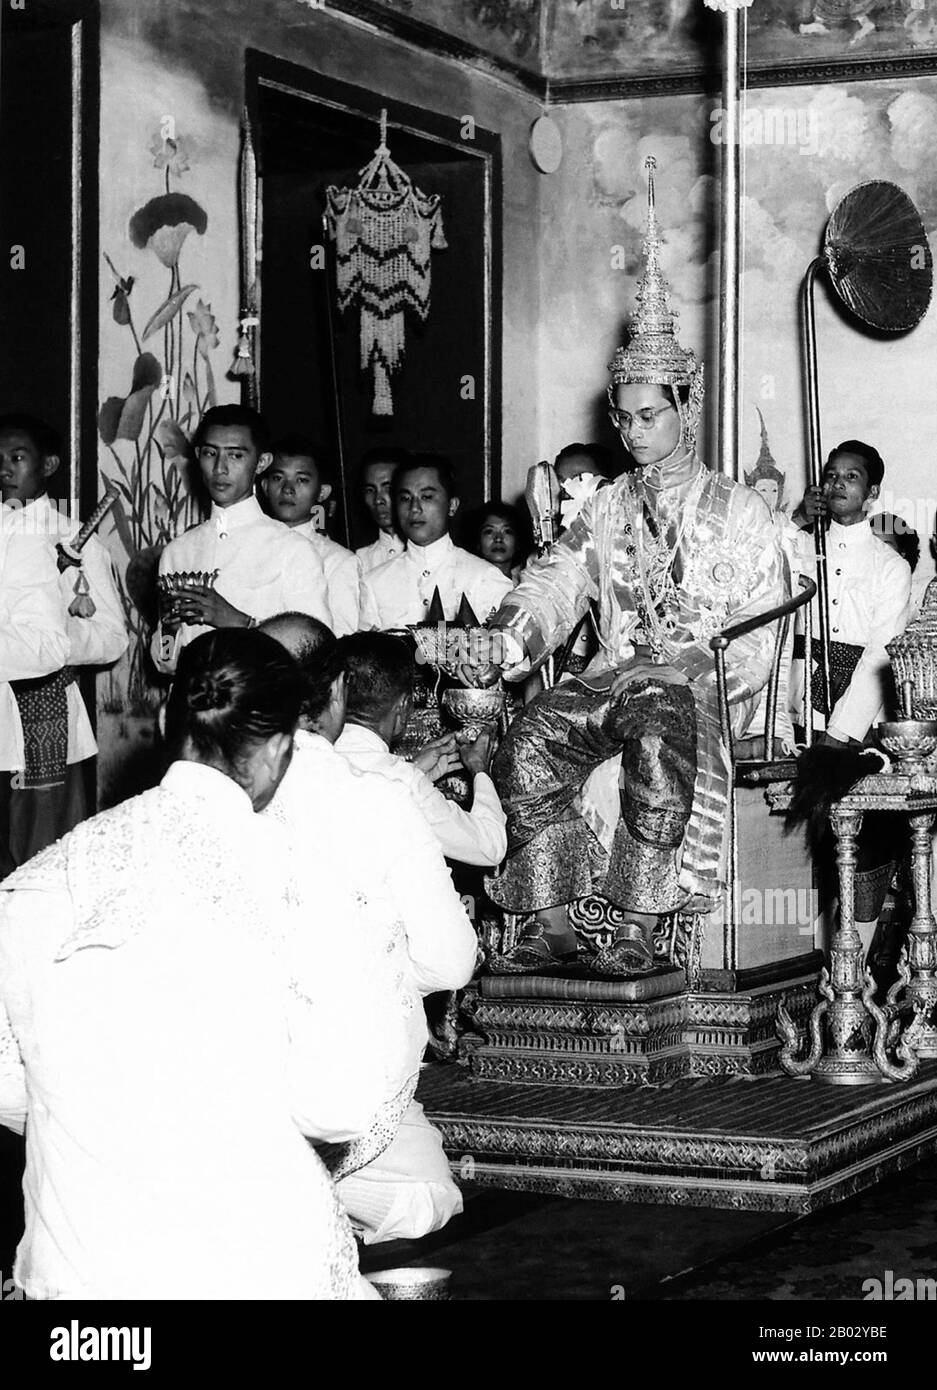 Bhumibol Adulyadej (Phumifon Adunyadet, 5 dicembre 1927) è l'attuale re della Thailandia. È conosciuto come Rama IX (e all'interno della famiglia reale tailandese e per chiudere gli associati semplicemente come Lek. Regnando dal 9 giugno 1946, è il capo di stato più longevo del mondo e il monarca più longevo della storia tailandese. Foto Stock